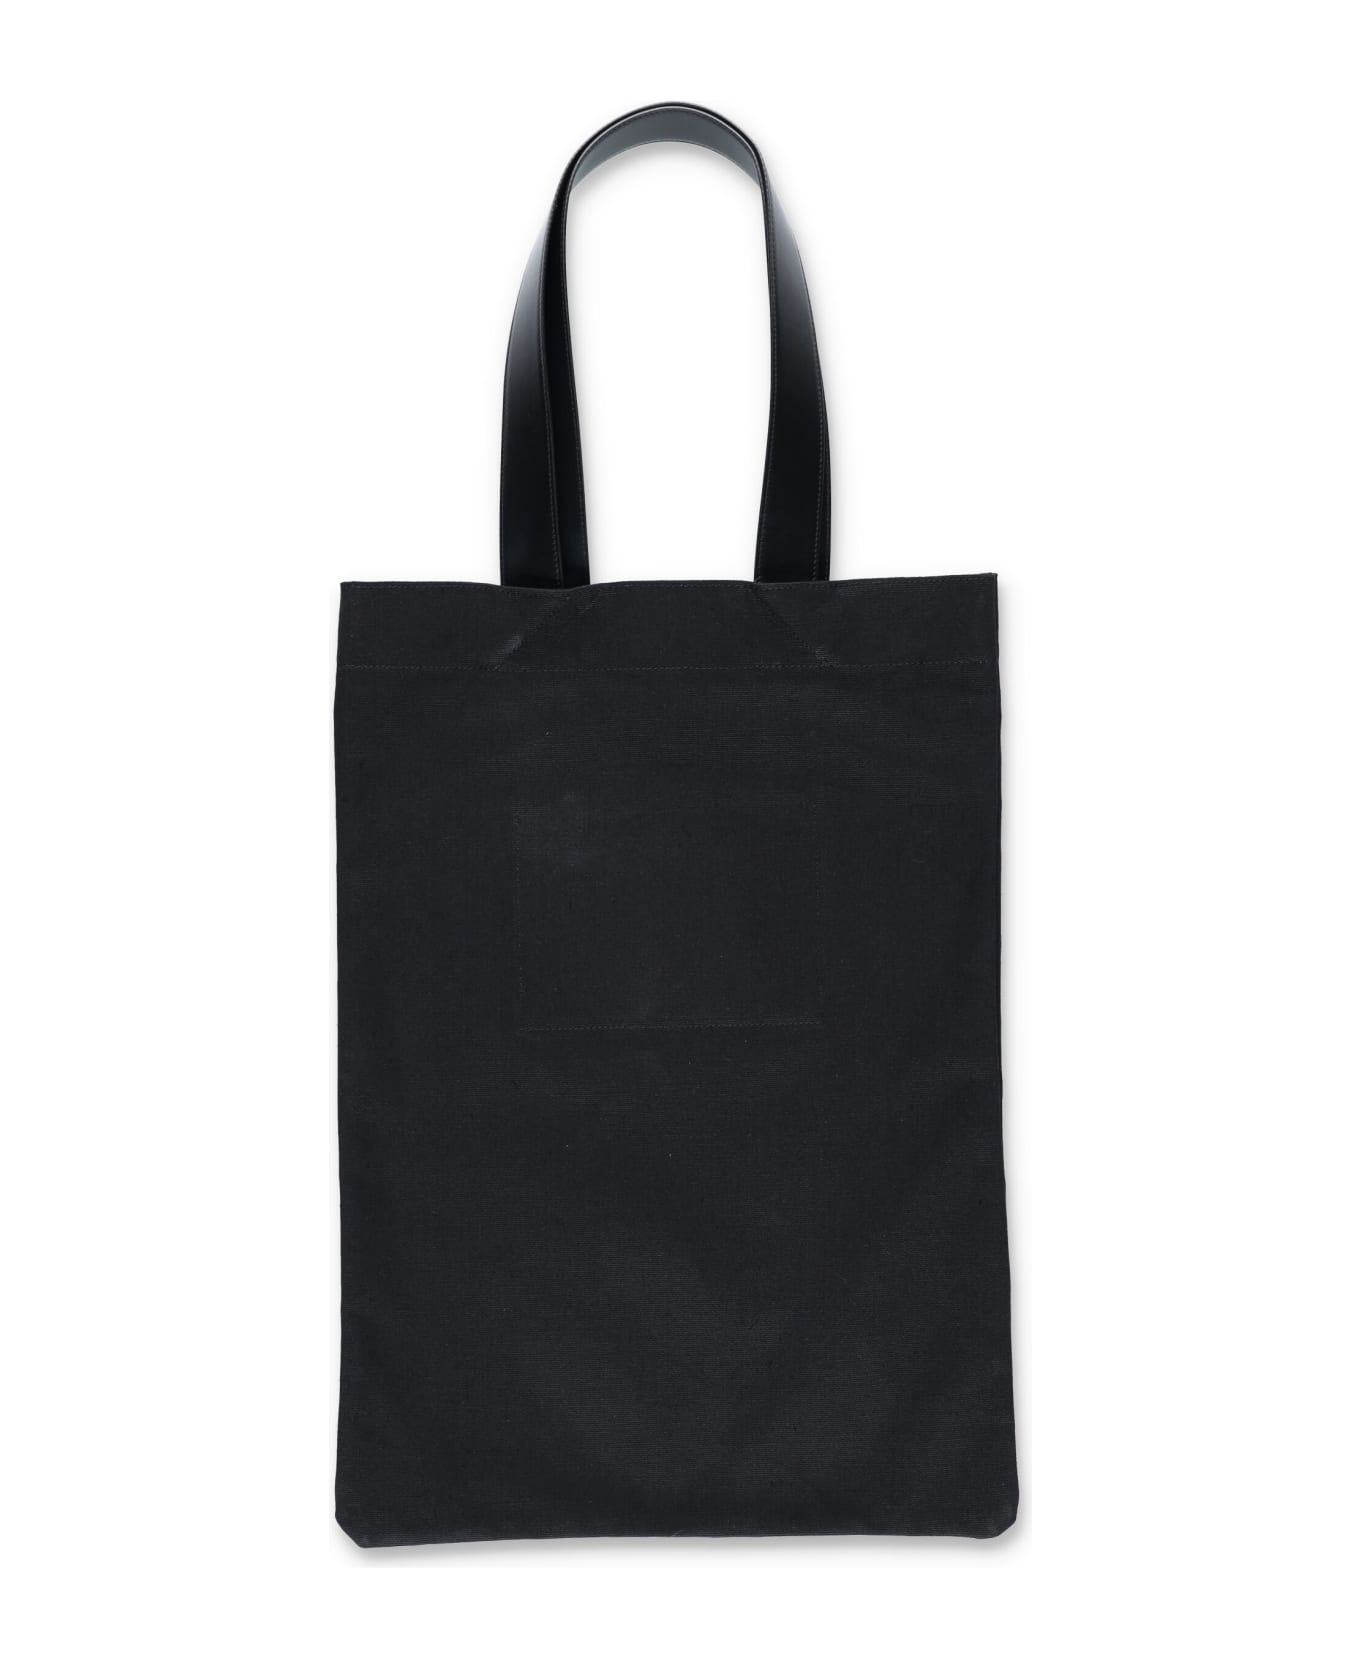 Jil Sander Large Shopping Bag - Nero